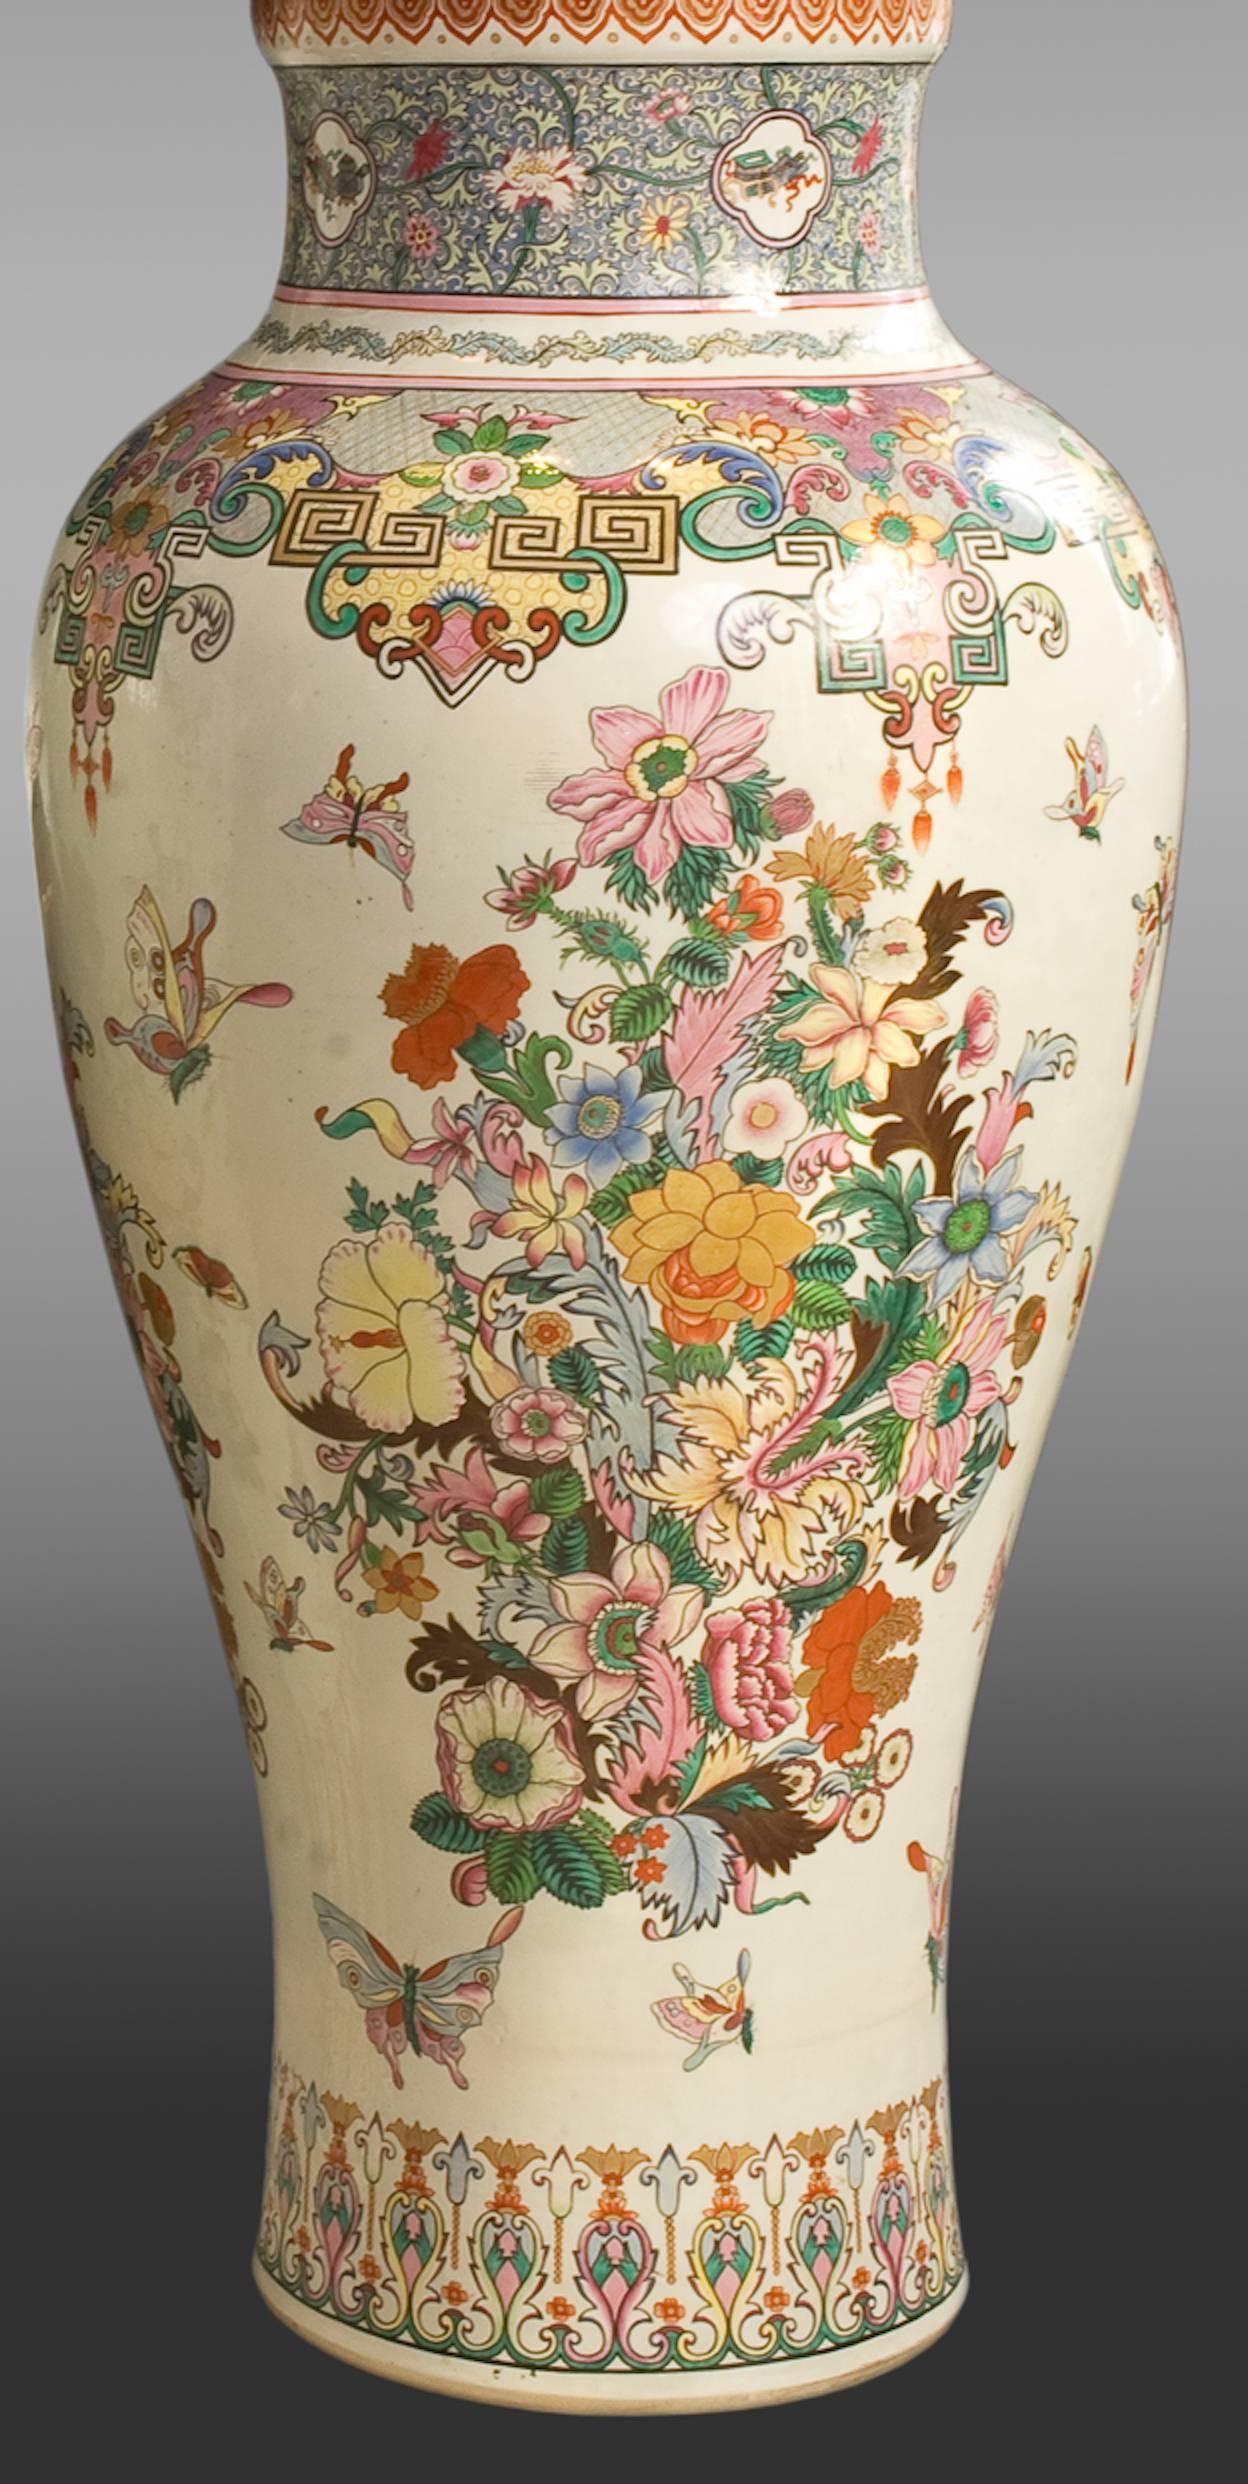 Vases et couvercles en porcelaine de Samson
Fin du 19e siècle
Taille exceptionnelle.
Décoration 